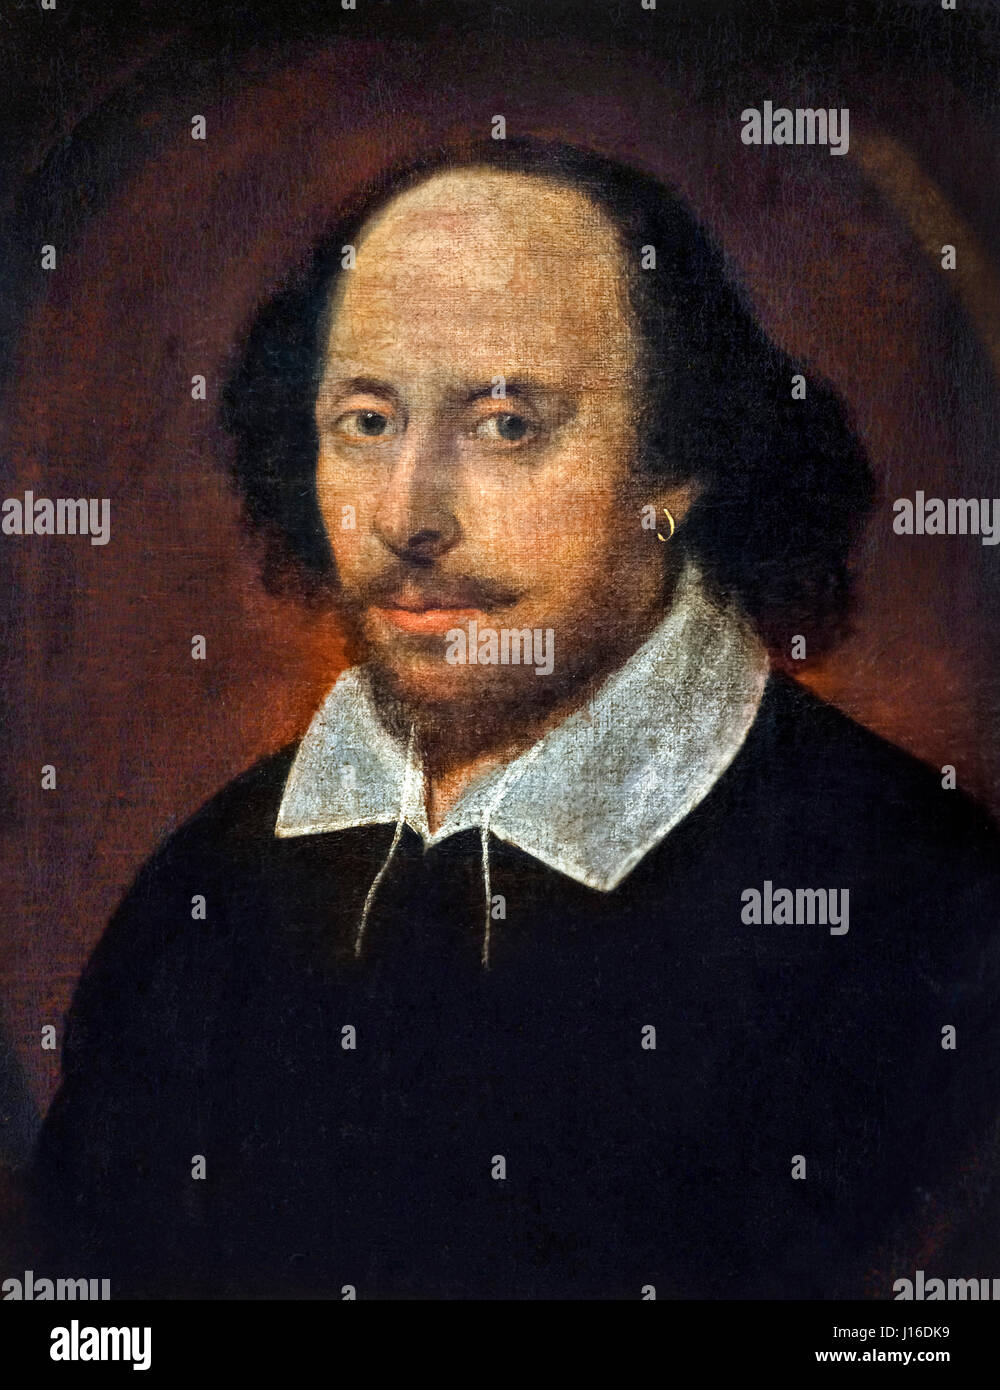 William Shakespeare, Chandos Portrait. La pittura di William Shakespeare, attribuito a John Taylor, olio su tela, c.1600-1610. Foto Stock